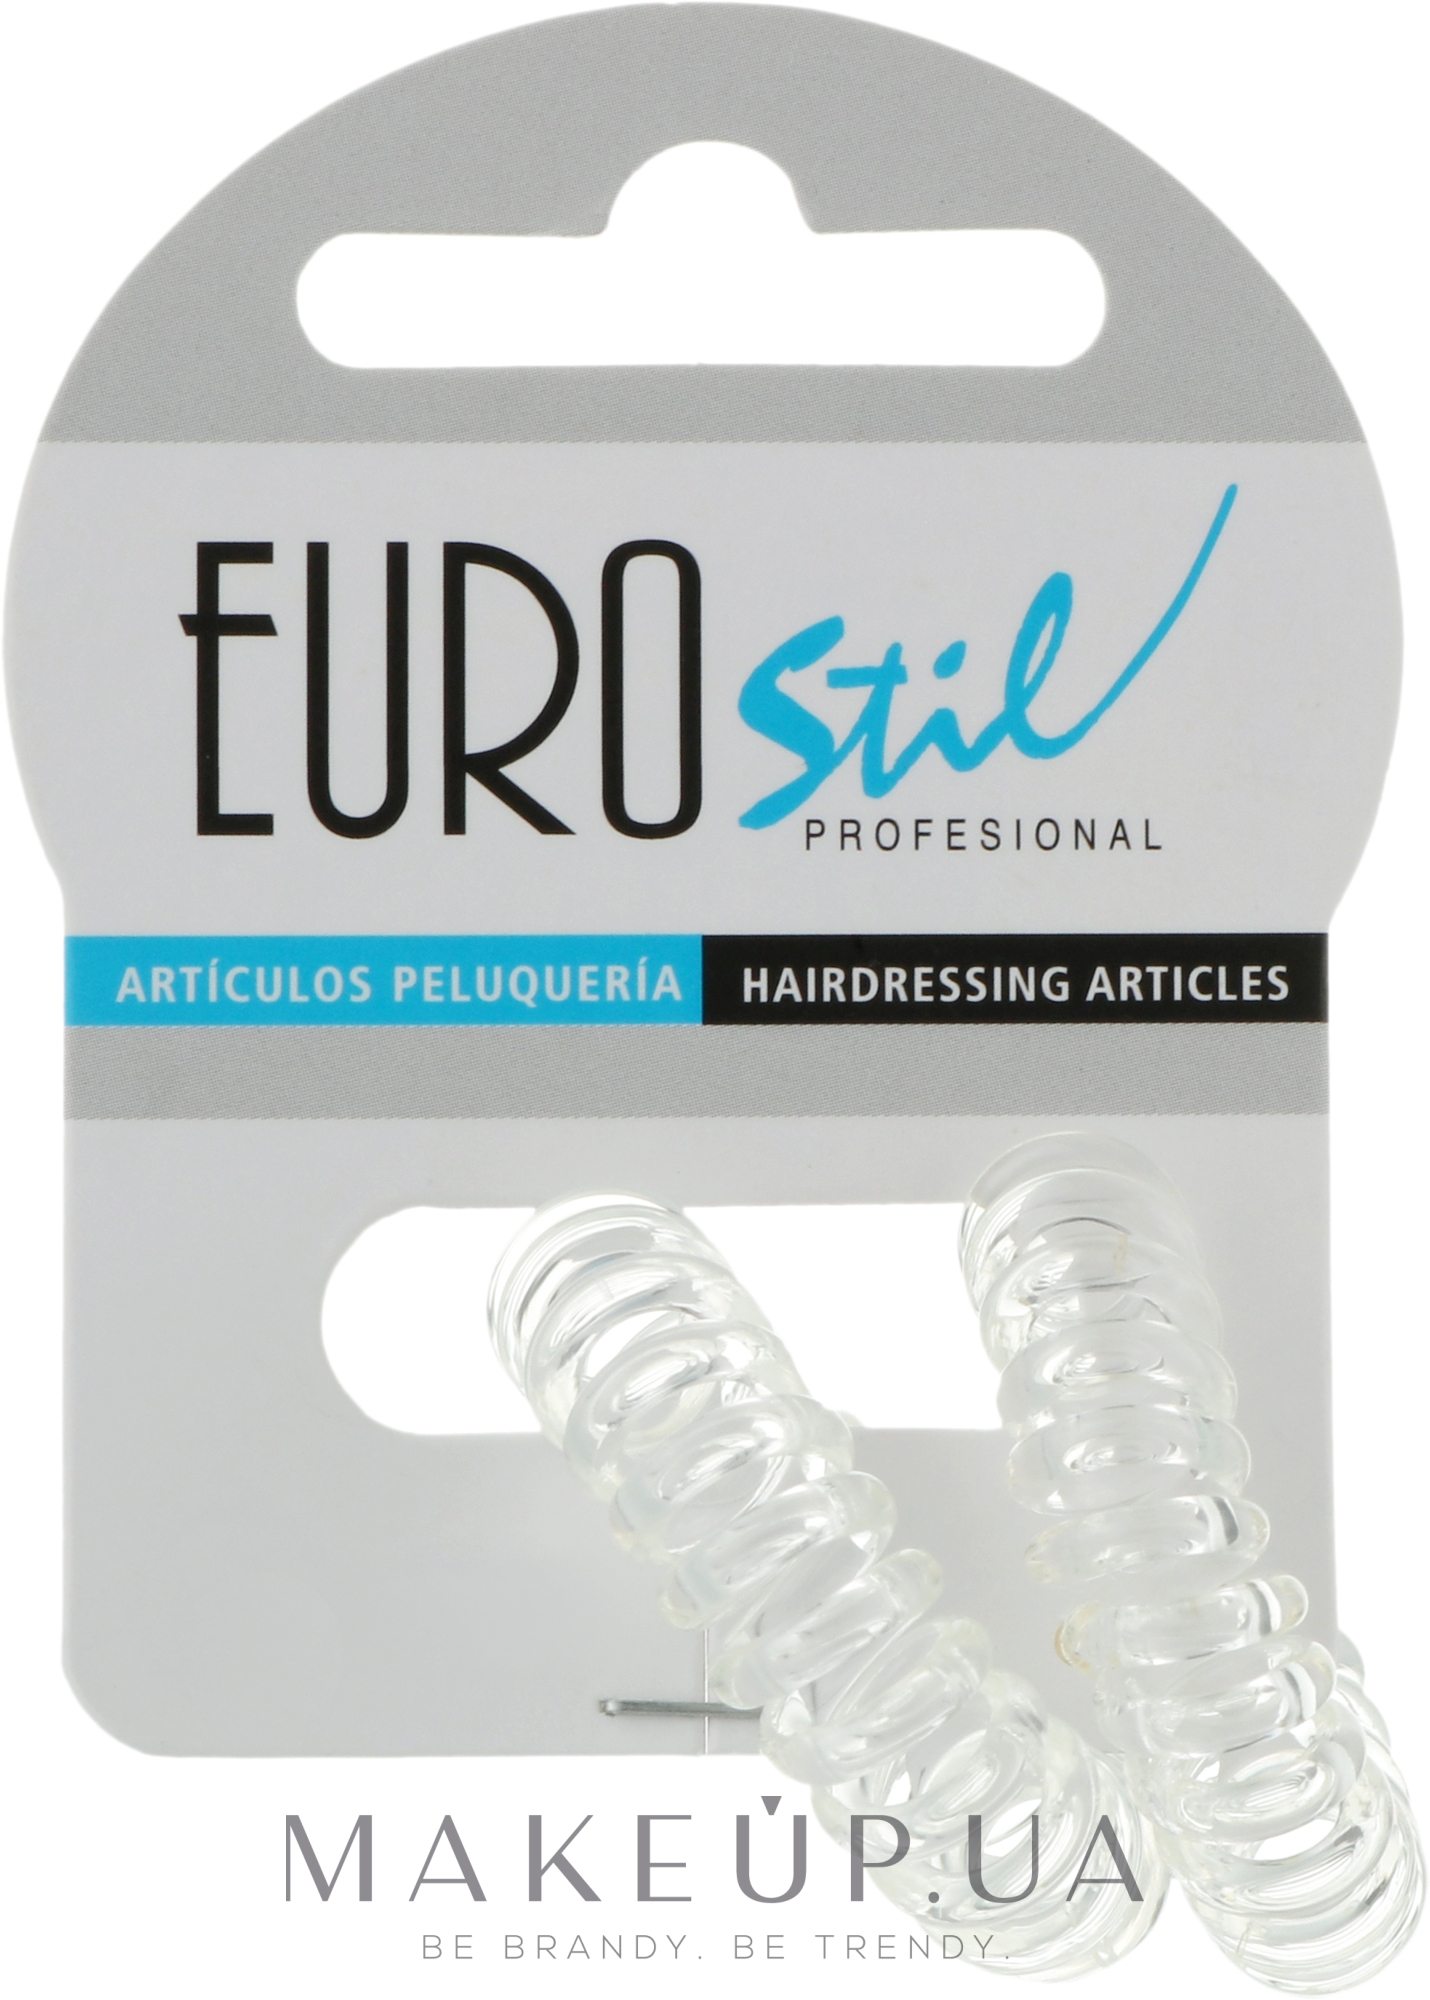 Резинки для волос, 2 шт, 04806/56 - Eurostil — фото 2шт